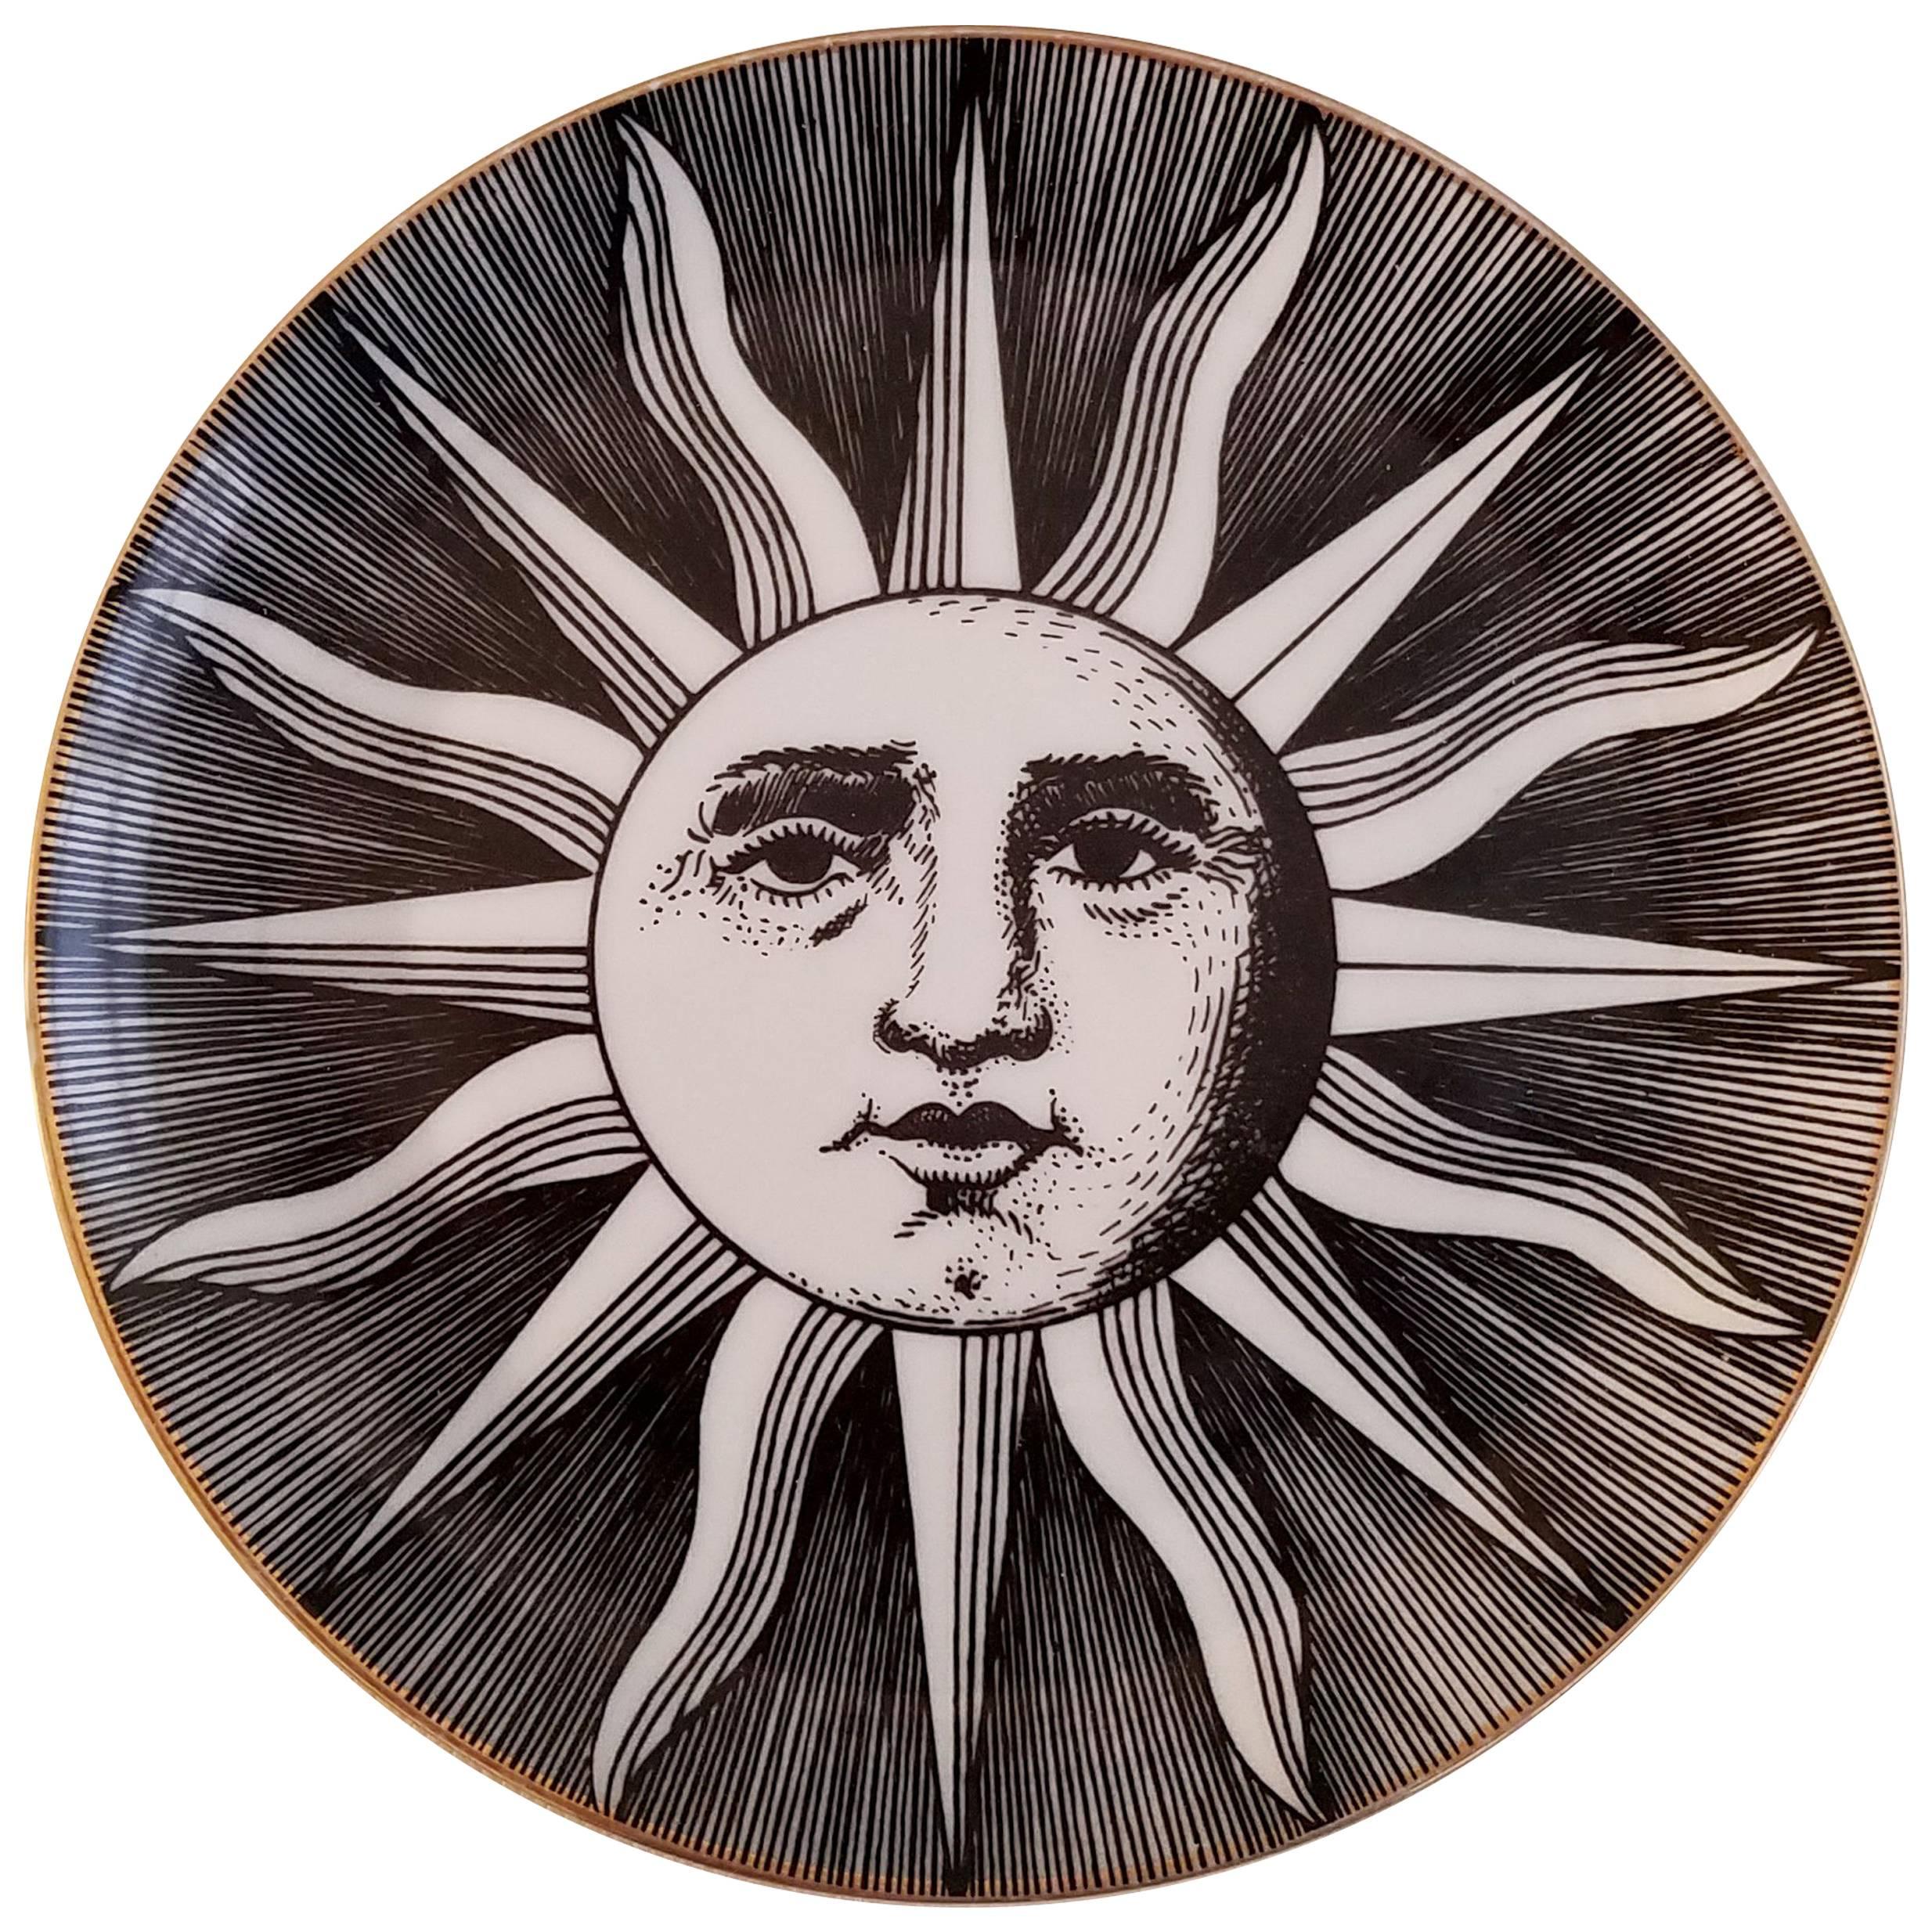 Vintage Piero Forasetti Small Soli E Lune 'Sun and Moon' Plate